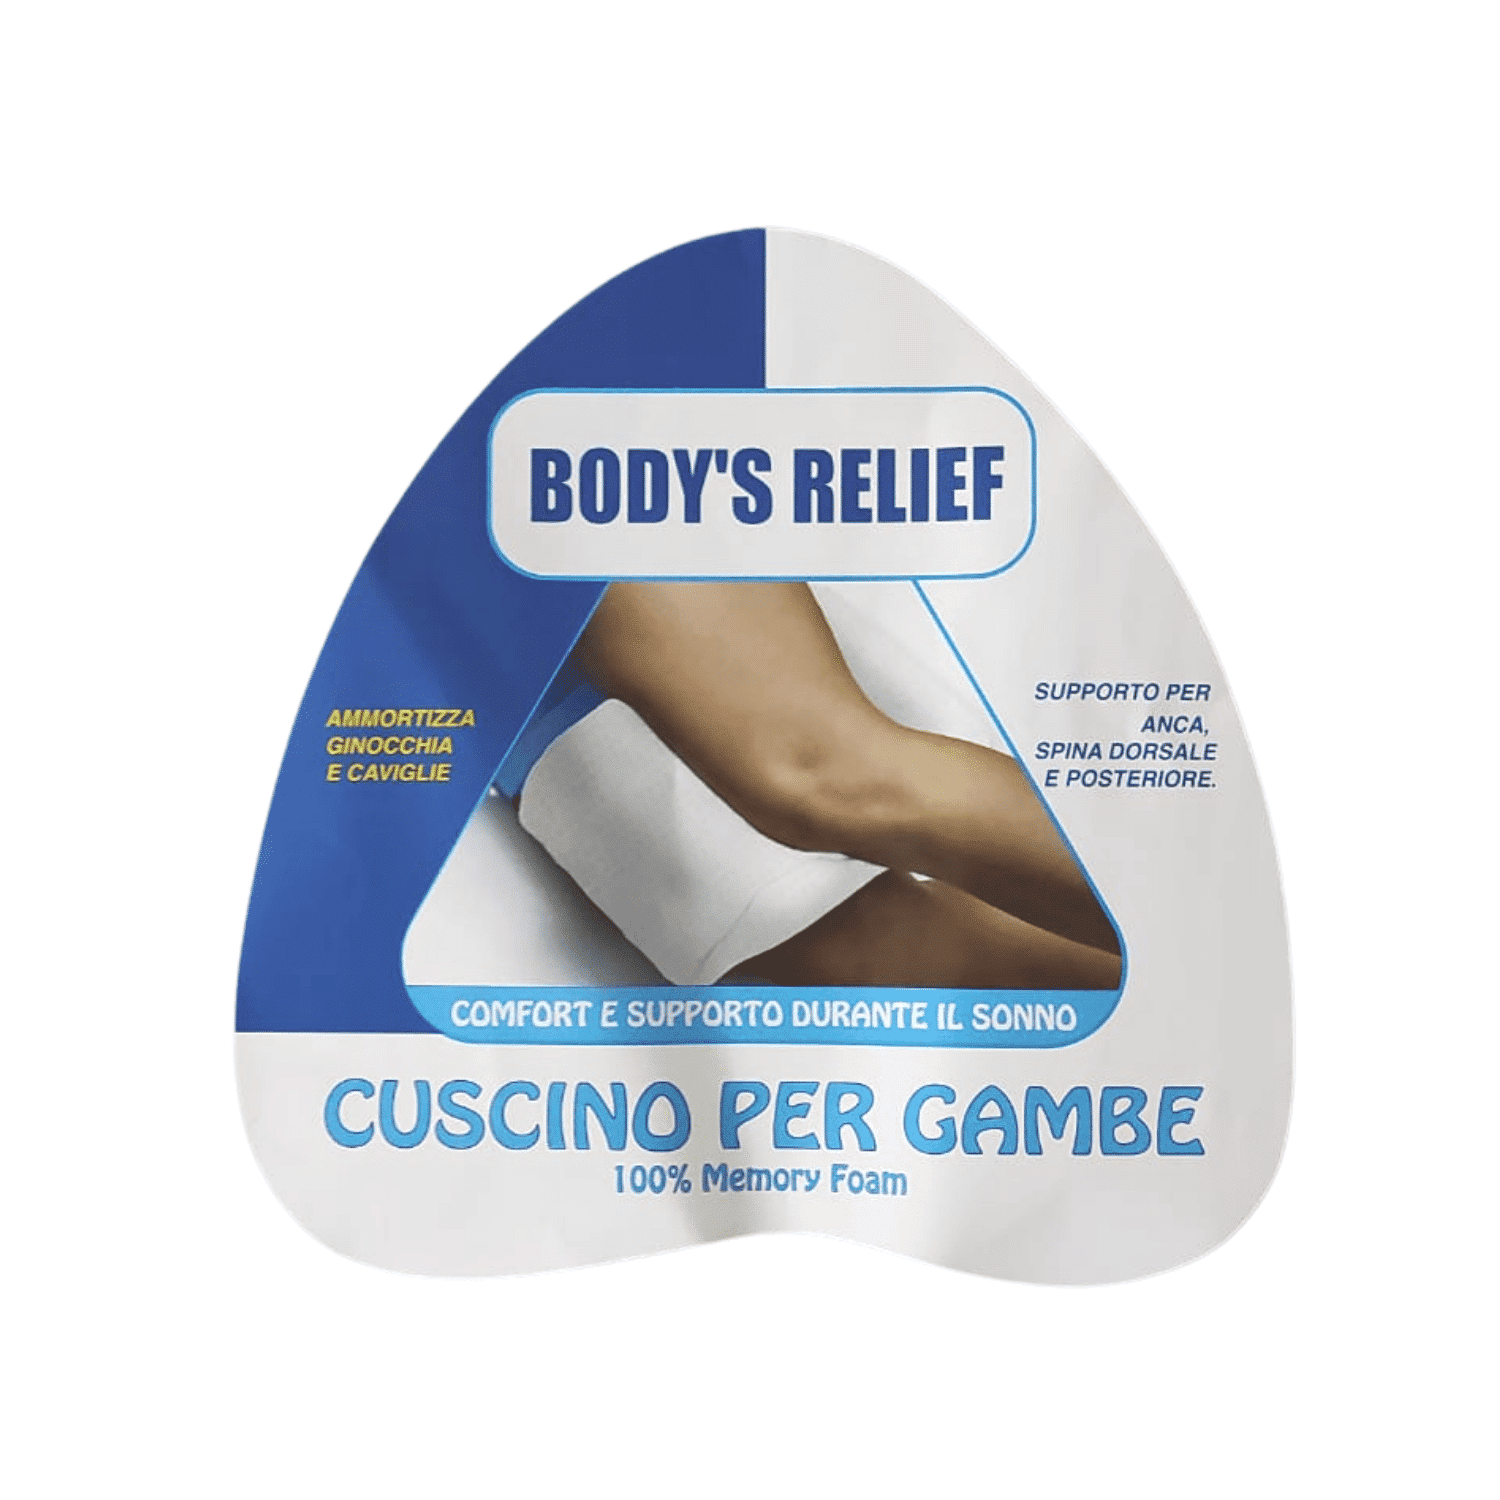 Cuscino per gambe Body's Relief 100% Memory Foam - Maresca Home Decor